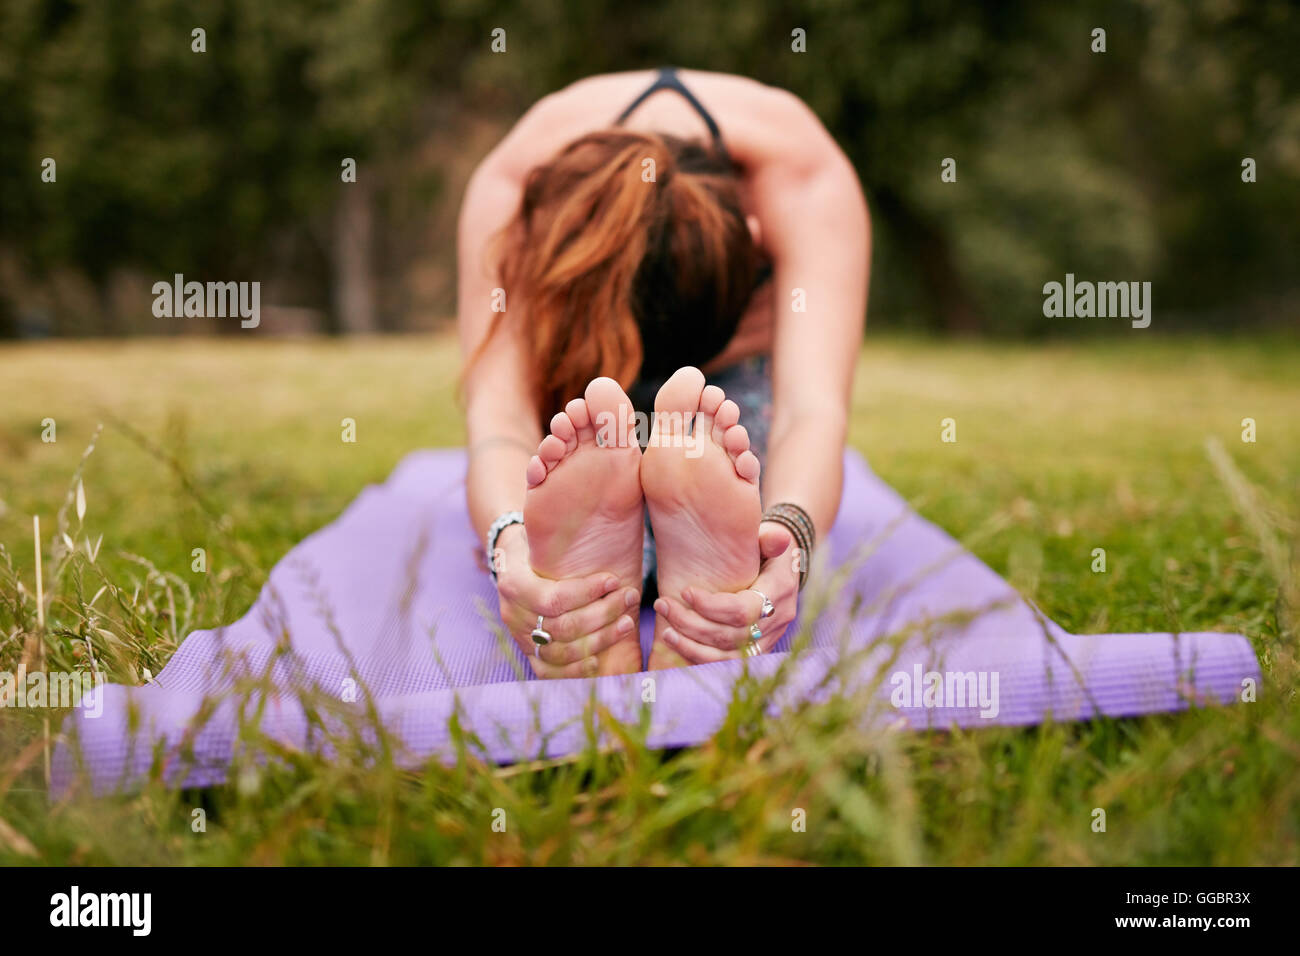 Junge Frau, die im Freien Yoga auf Gras macht, Paschimottanasana-Pose übt. Fitness-Frau sitzend nach vorne beugen während des Trainings Stockfoto